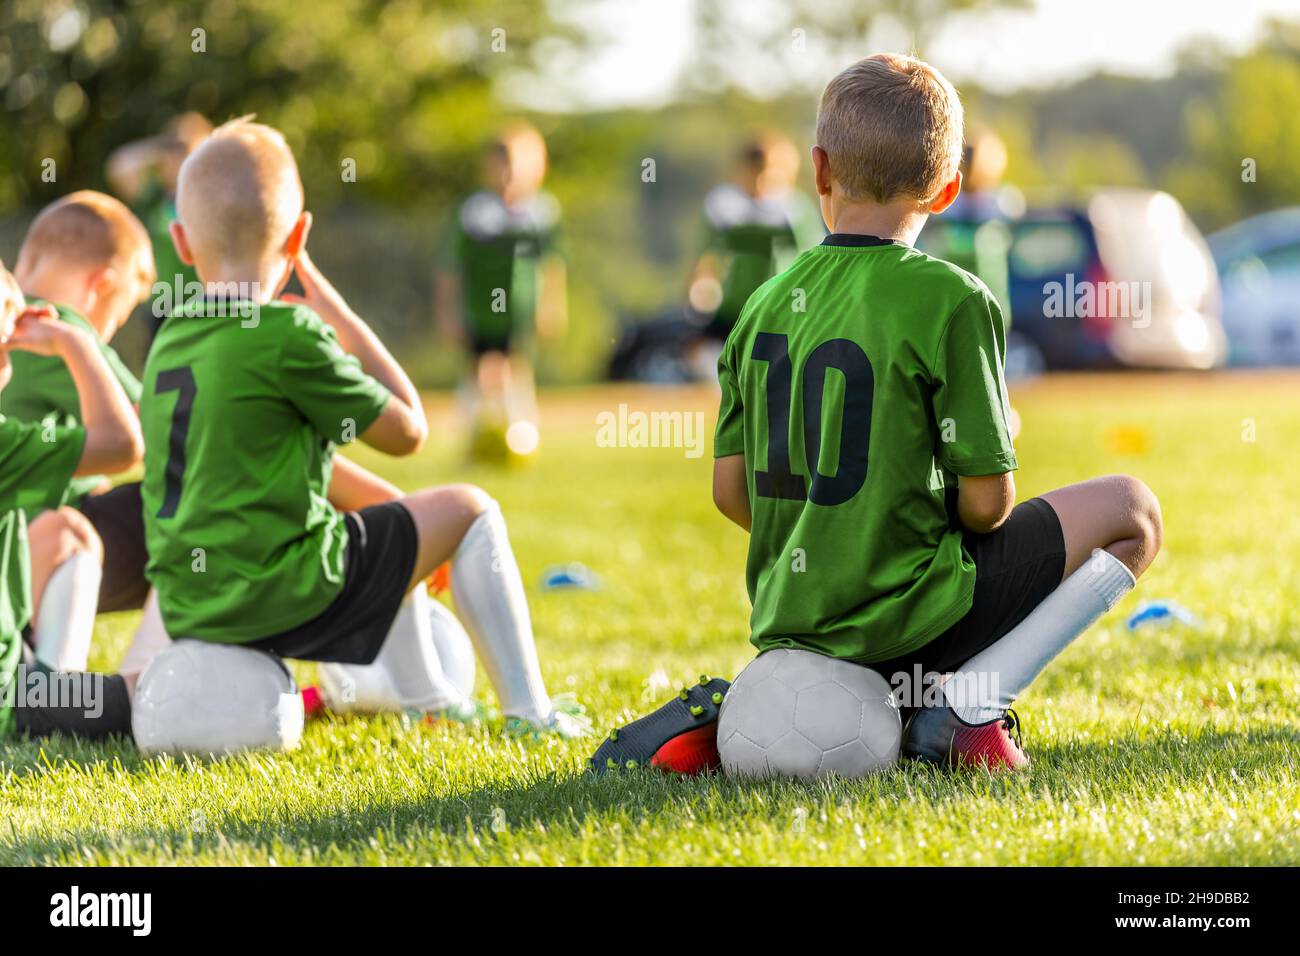 Groupe de jeunes garçons Kicking Sports Soccer Game sur terrain de pelouse.Garçons assis sur des ballons de football en attente de jouer le jeu.Amis dans l'équipe sportive.École B Banque D'Images